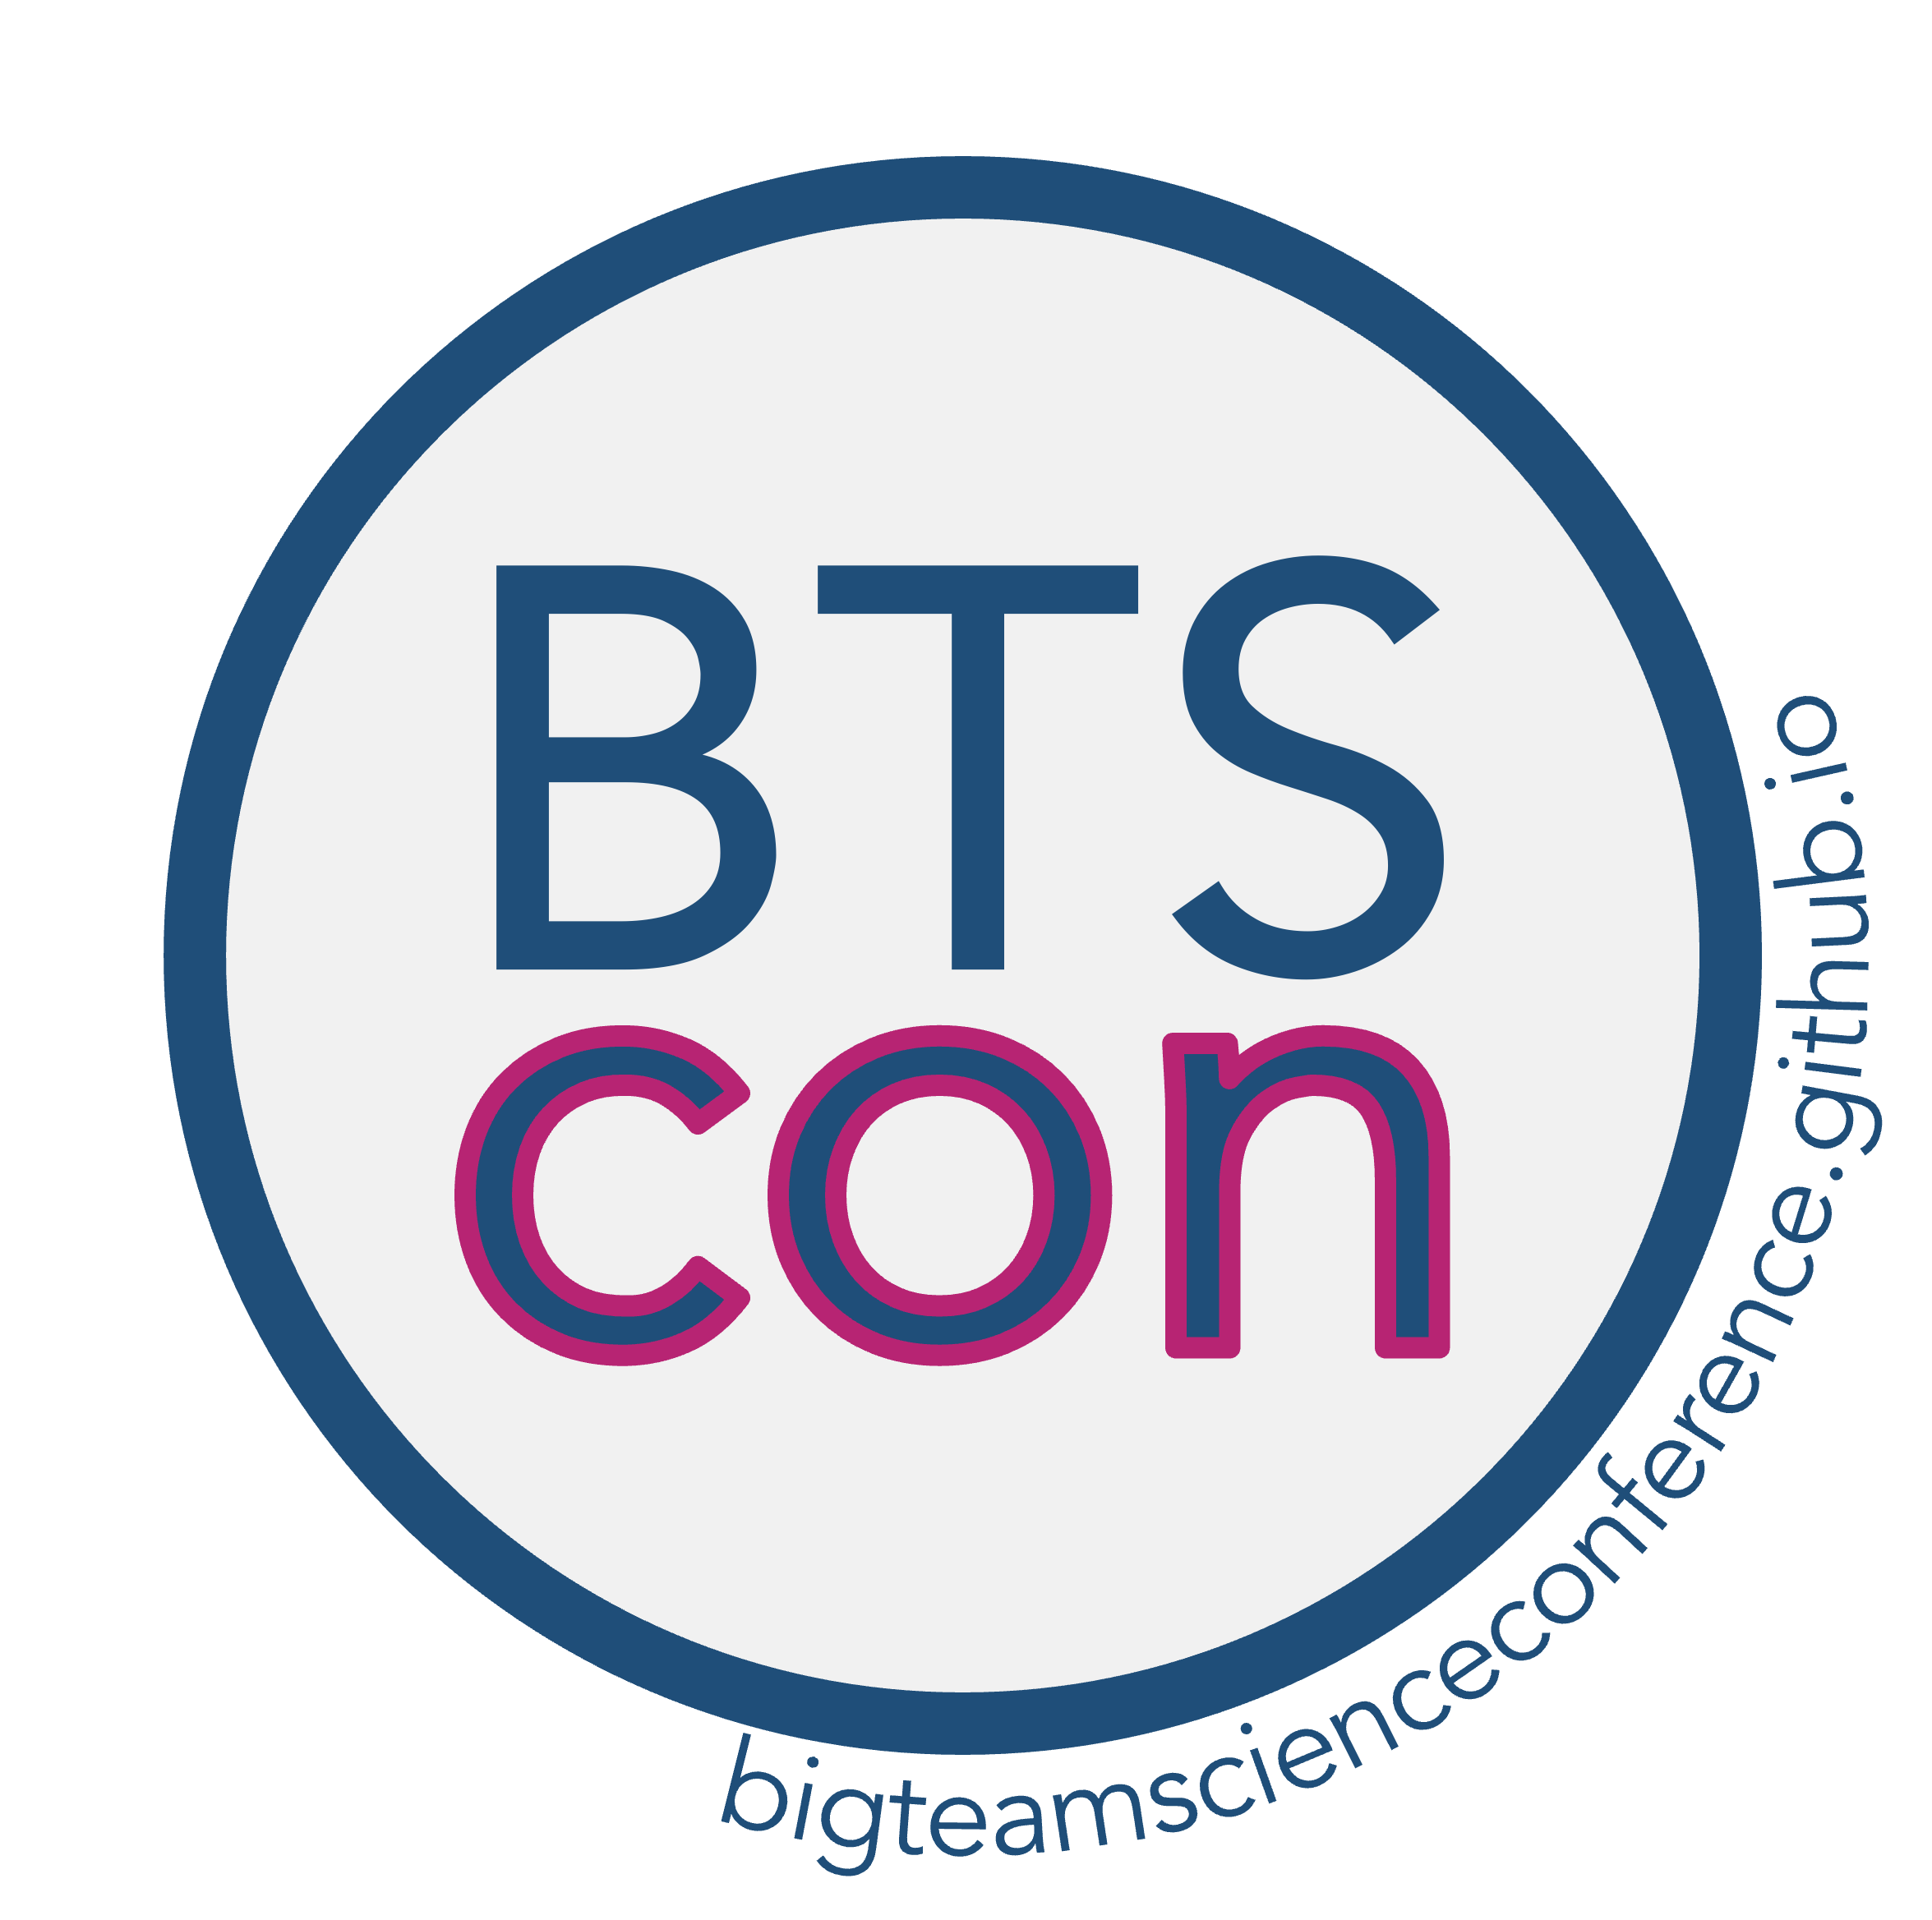 BTSCON logo with website